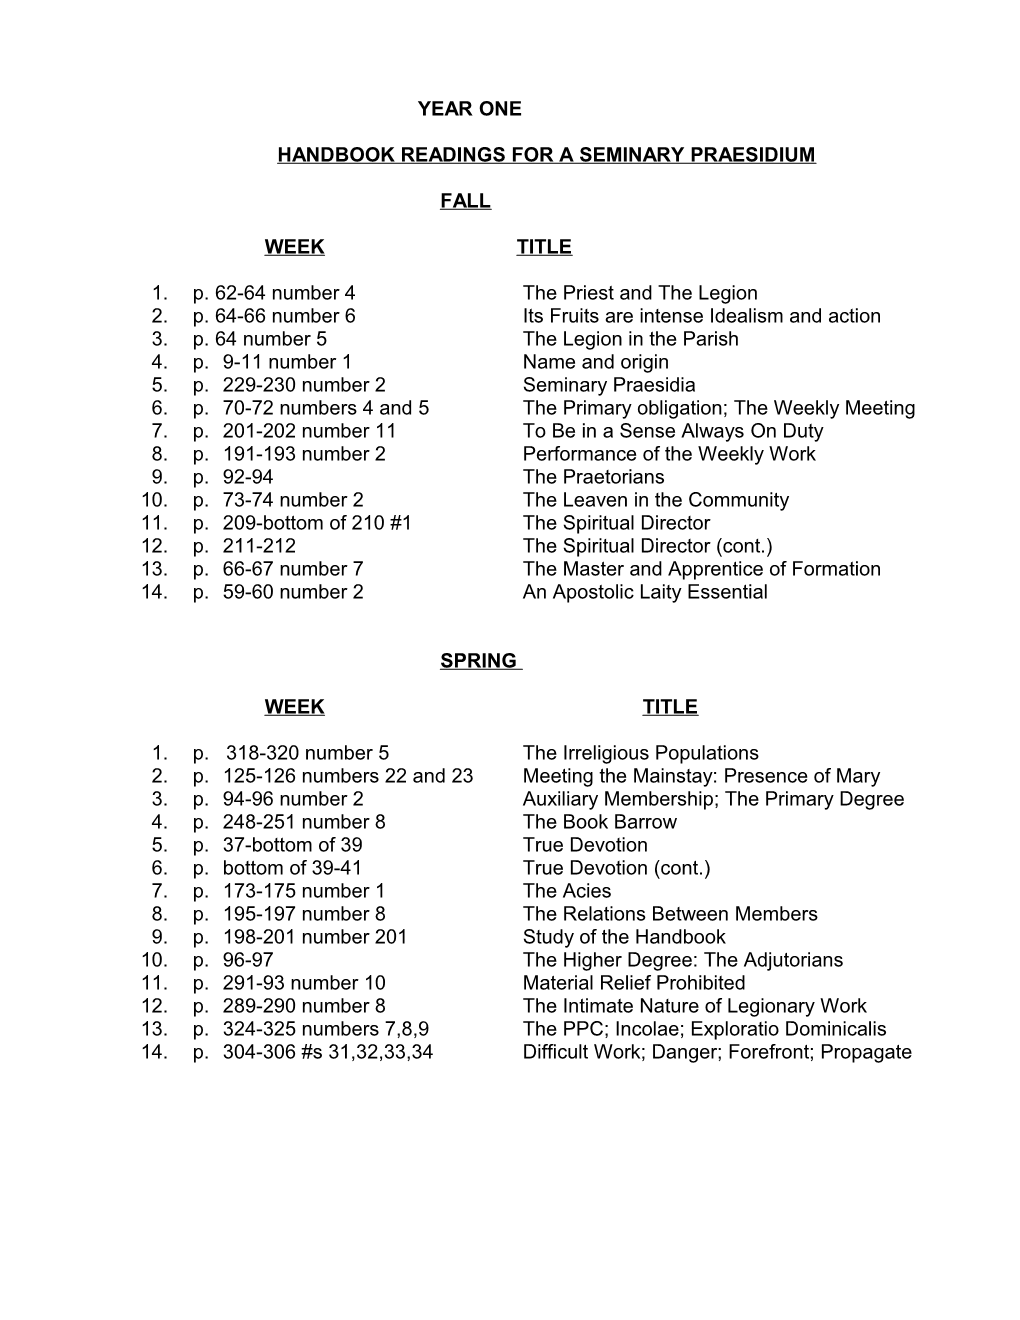 Handbook Readings for a Seminary Praesidium